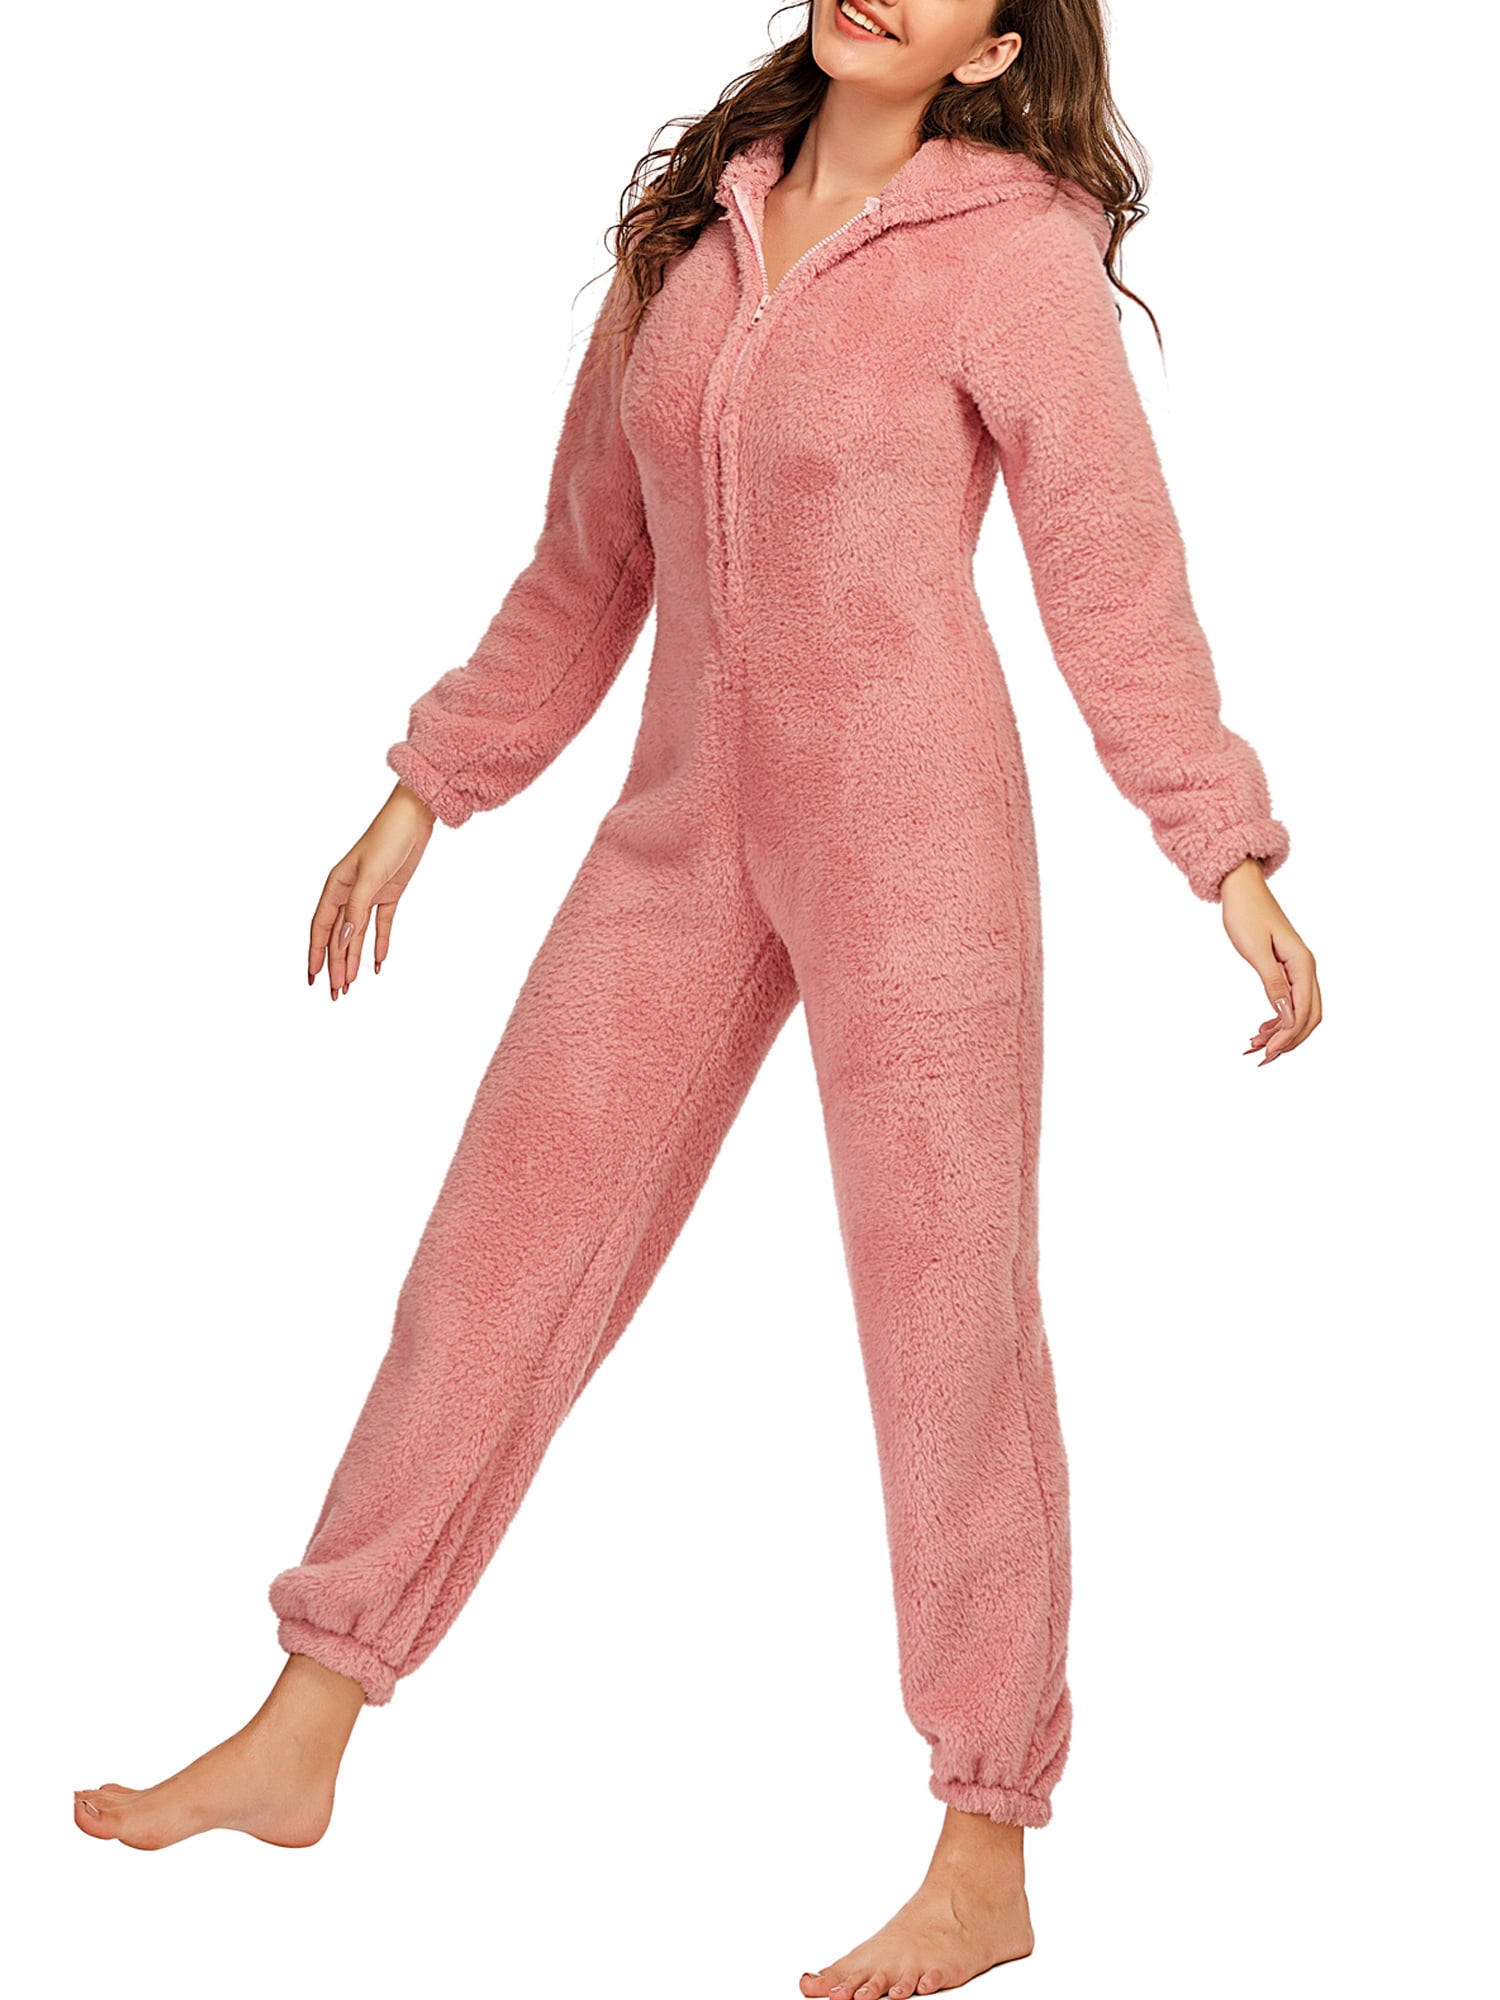 Adults Kids Unisex Galaxy Night Sky Casual Warm One-Piece Sleepwear Pajamas 